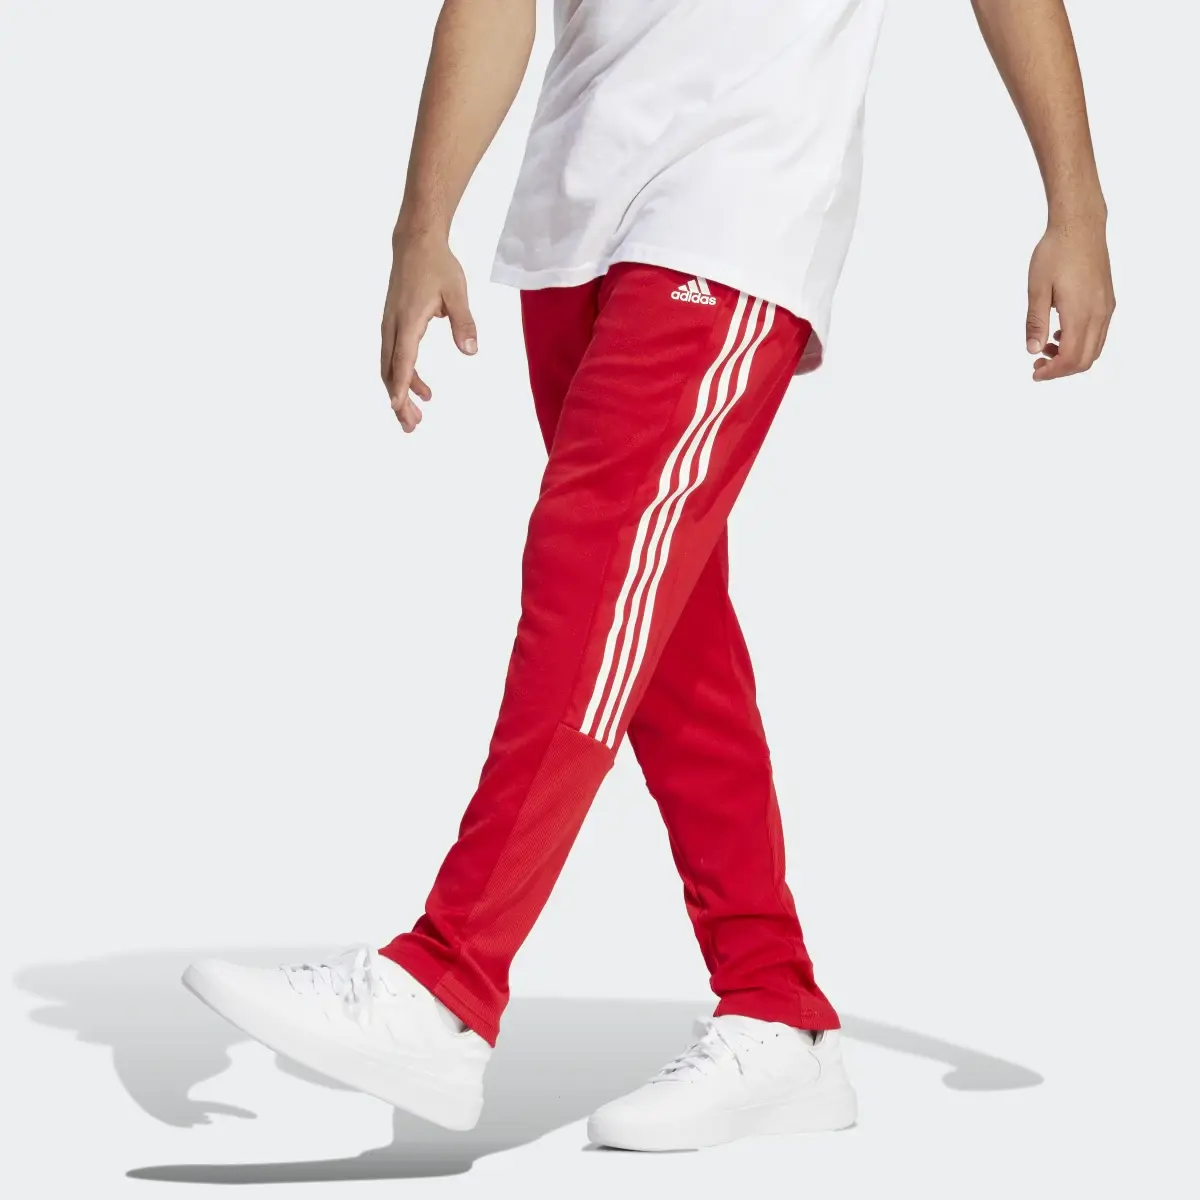 Adidas Tiro Suit-Up Lifestyle Joggers. 1